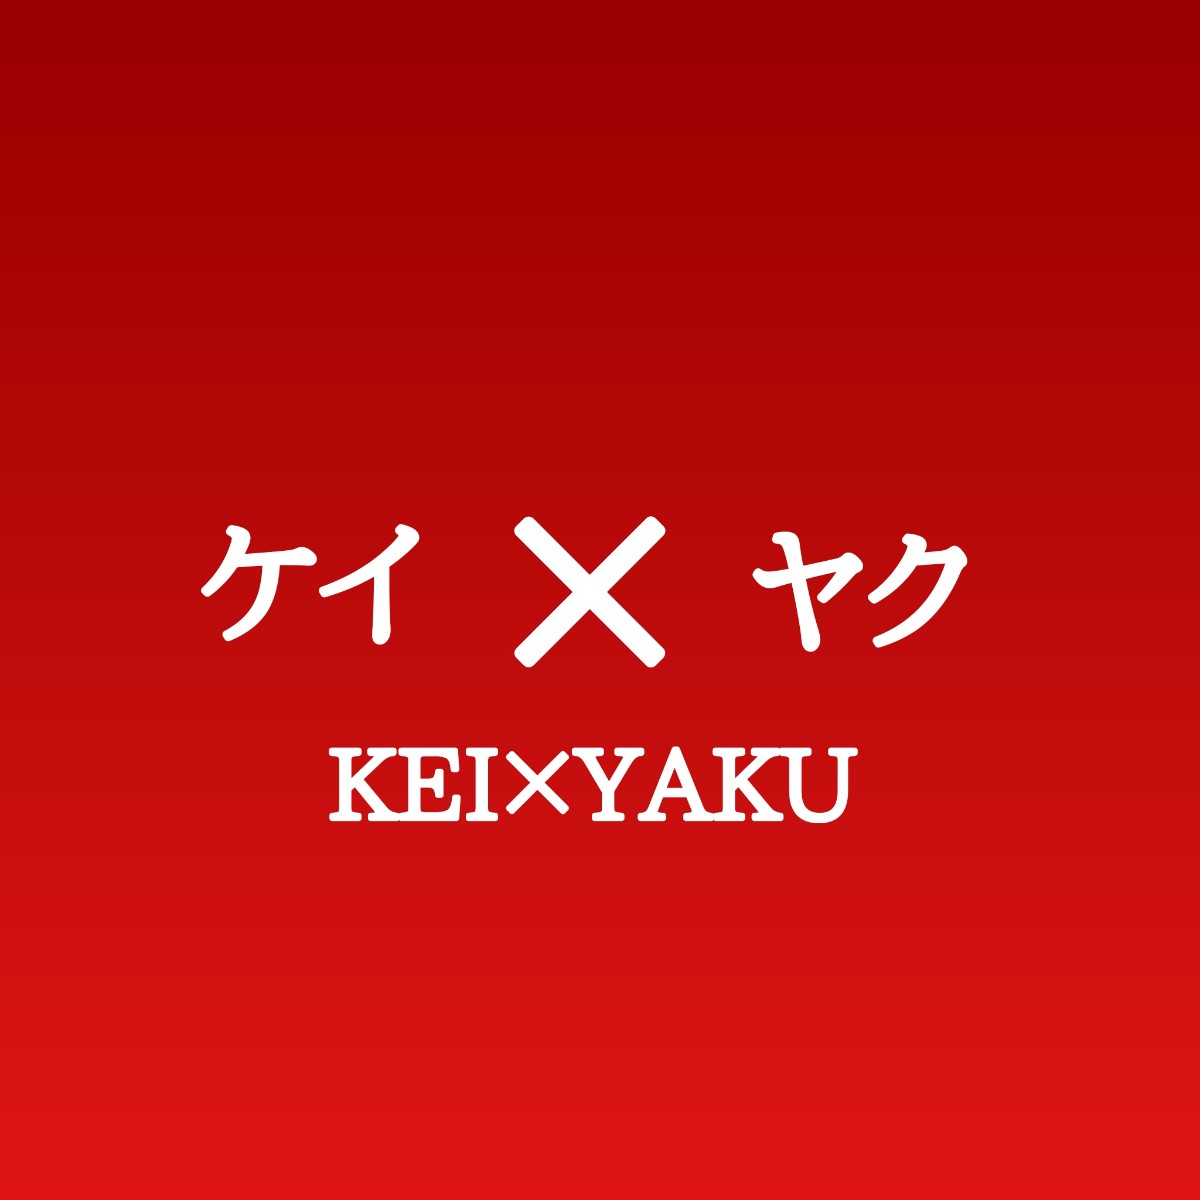 ケイヤク キャスト相関図とあらすじネタバレ 原作や主題歌は Sakusaku